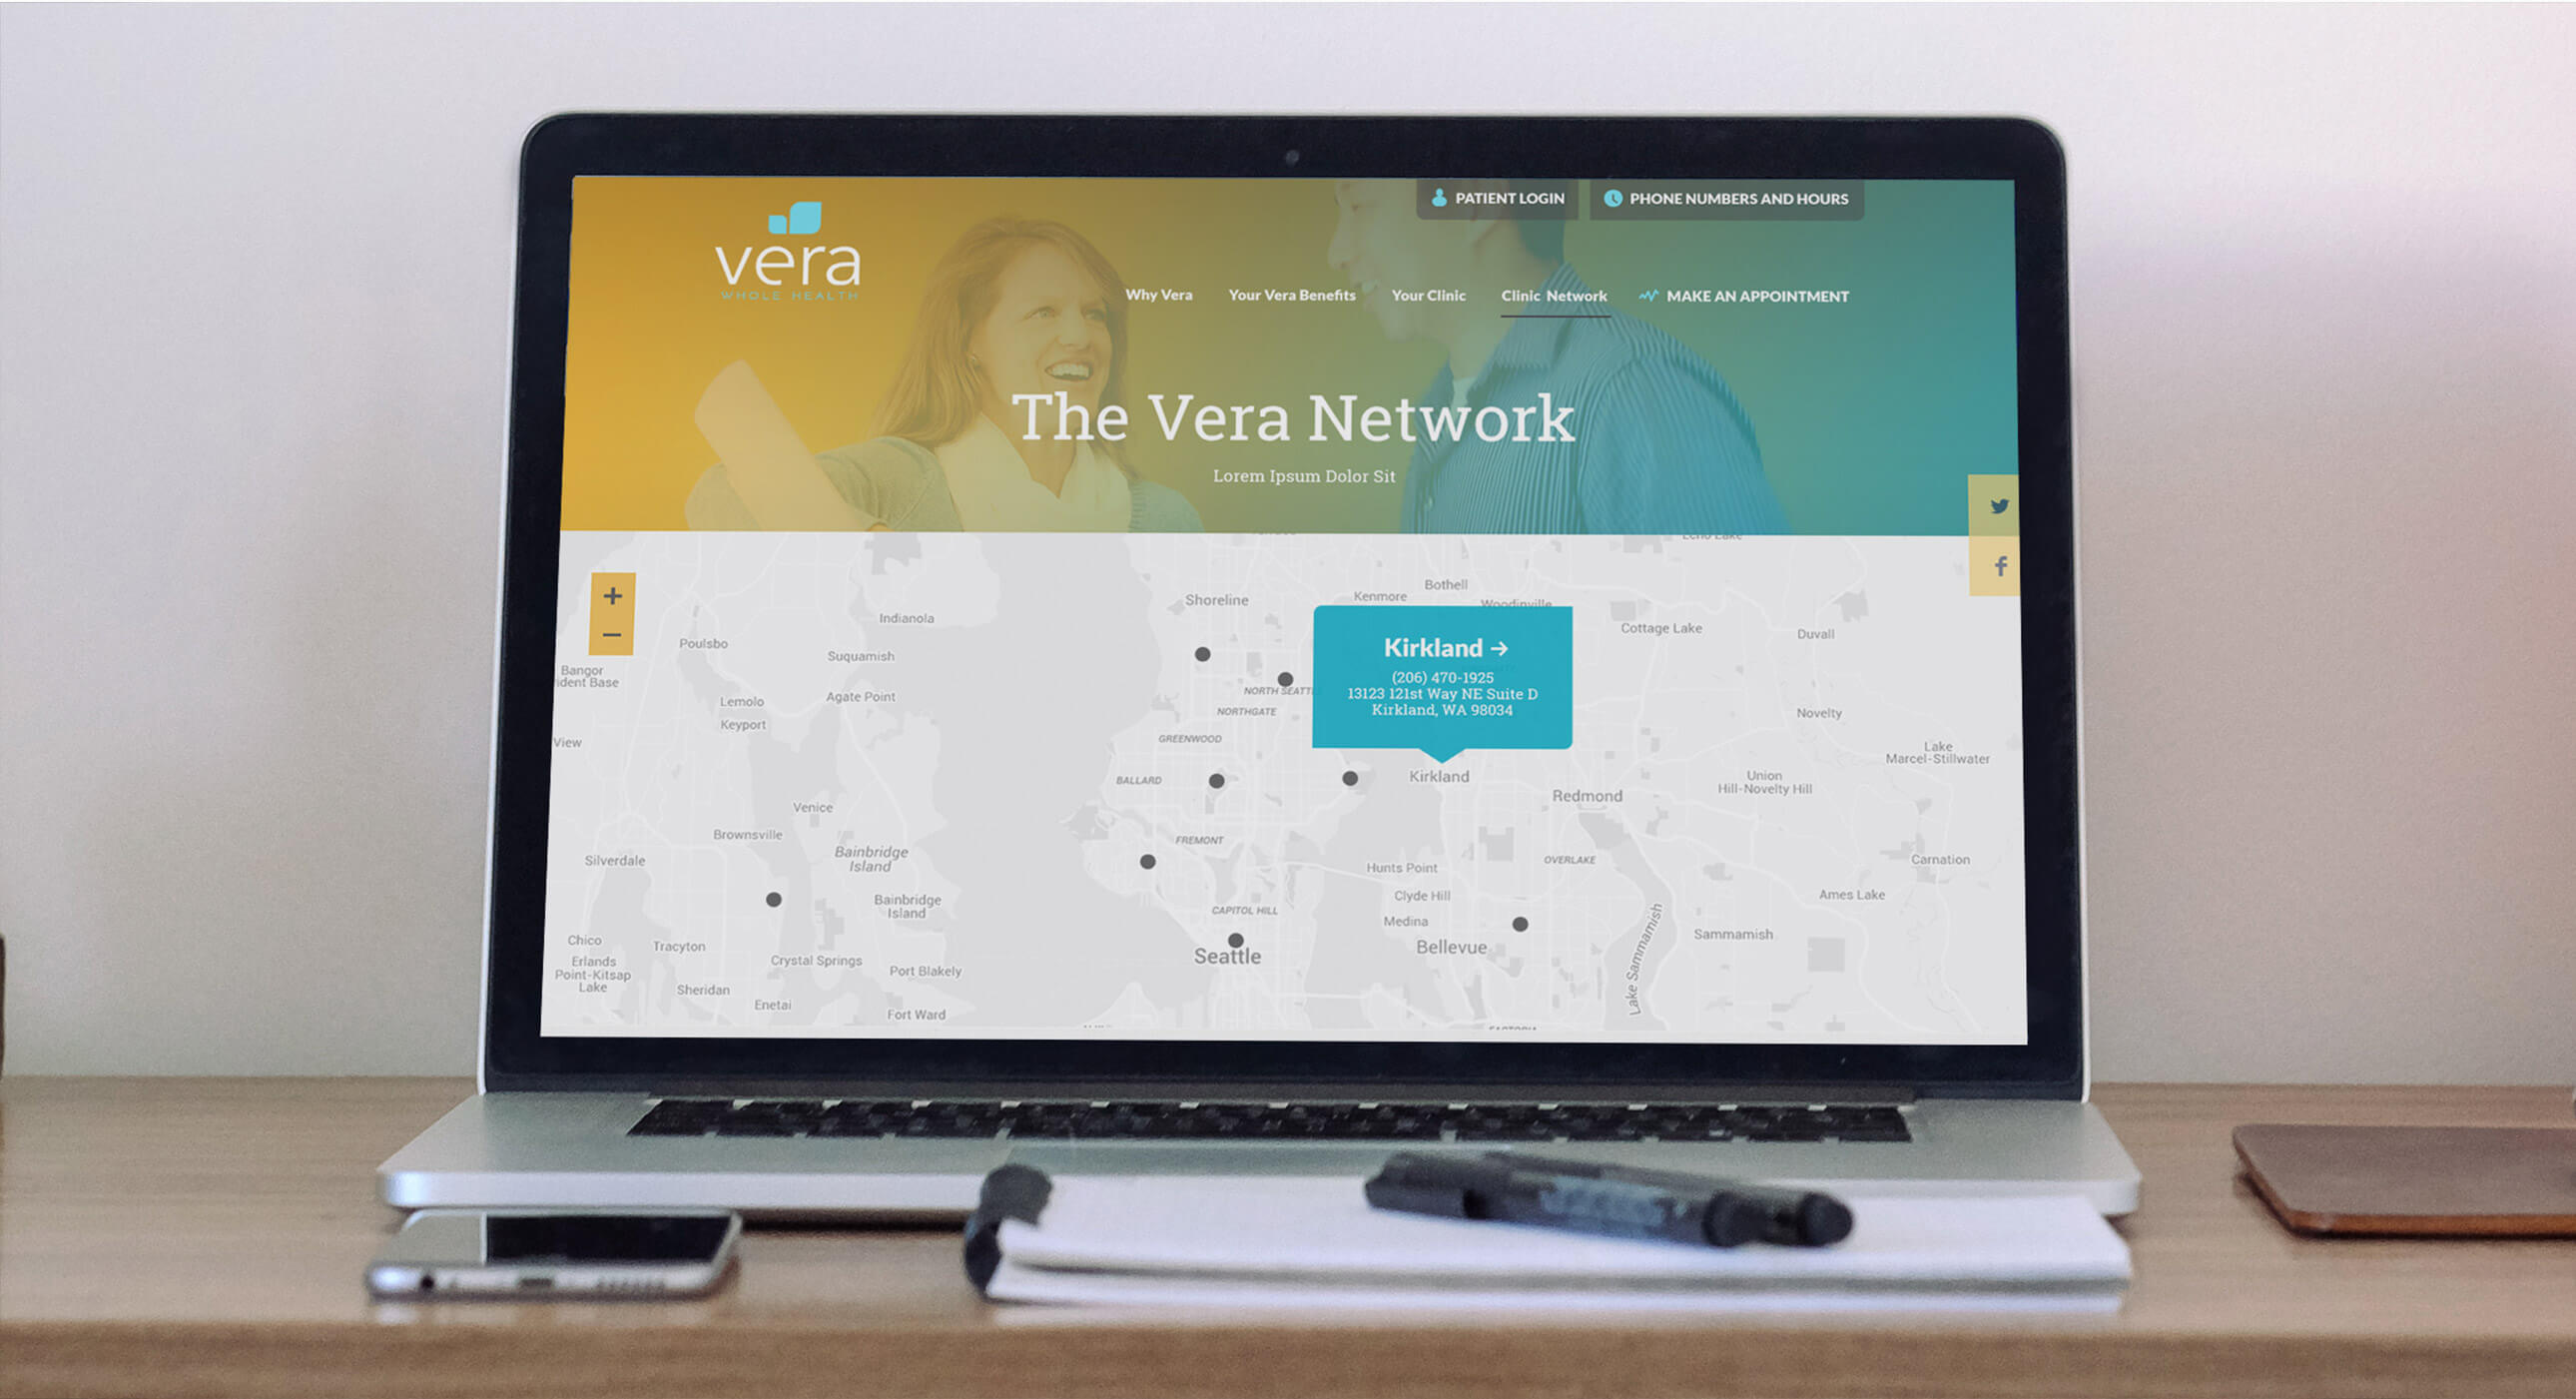 Vera network website page